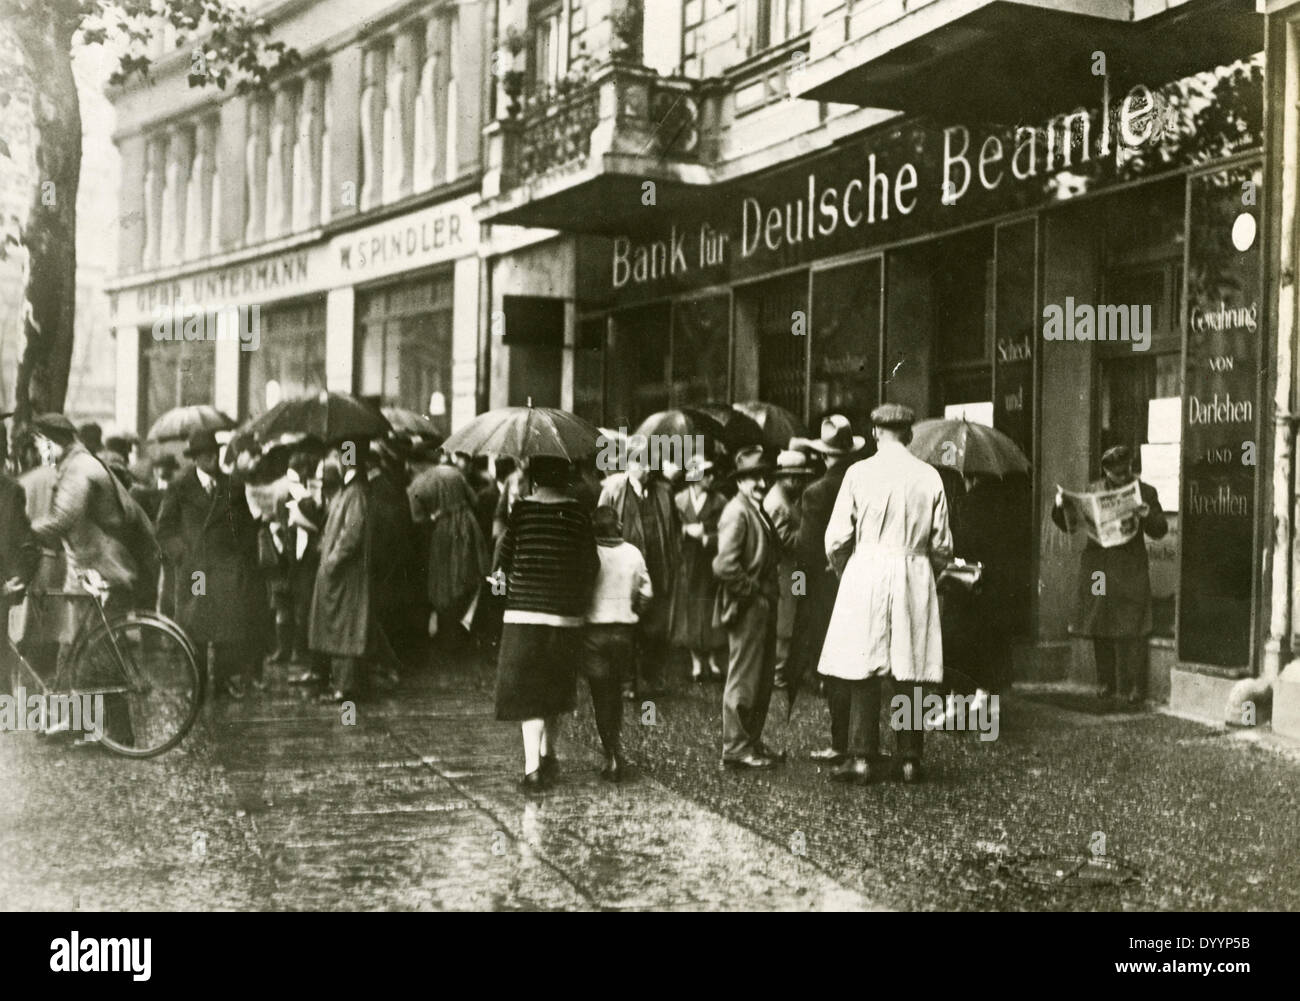 Weltwirtschaftskrise: Banken, Börse, Konkurs der Deutsche Beamte-Bank in Berlin, 1929/32 Stockfoto